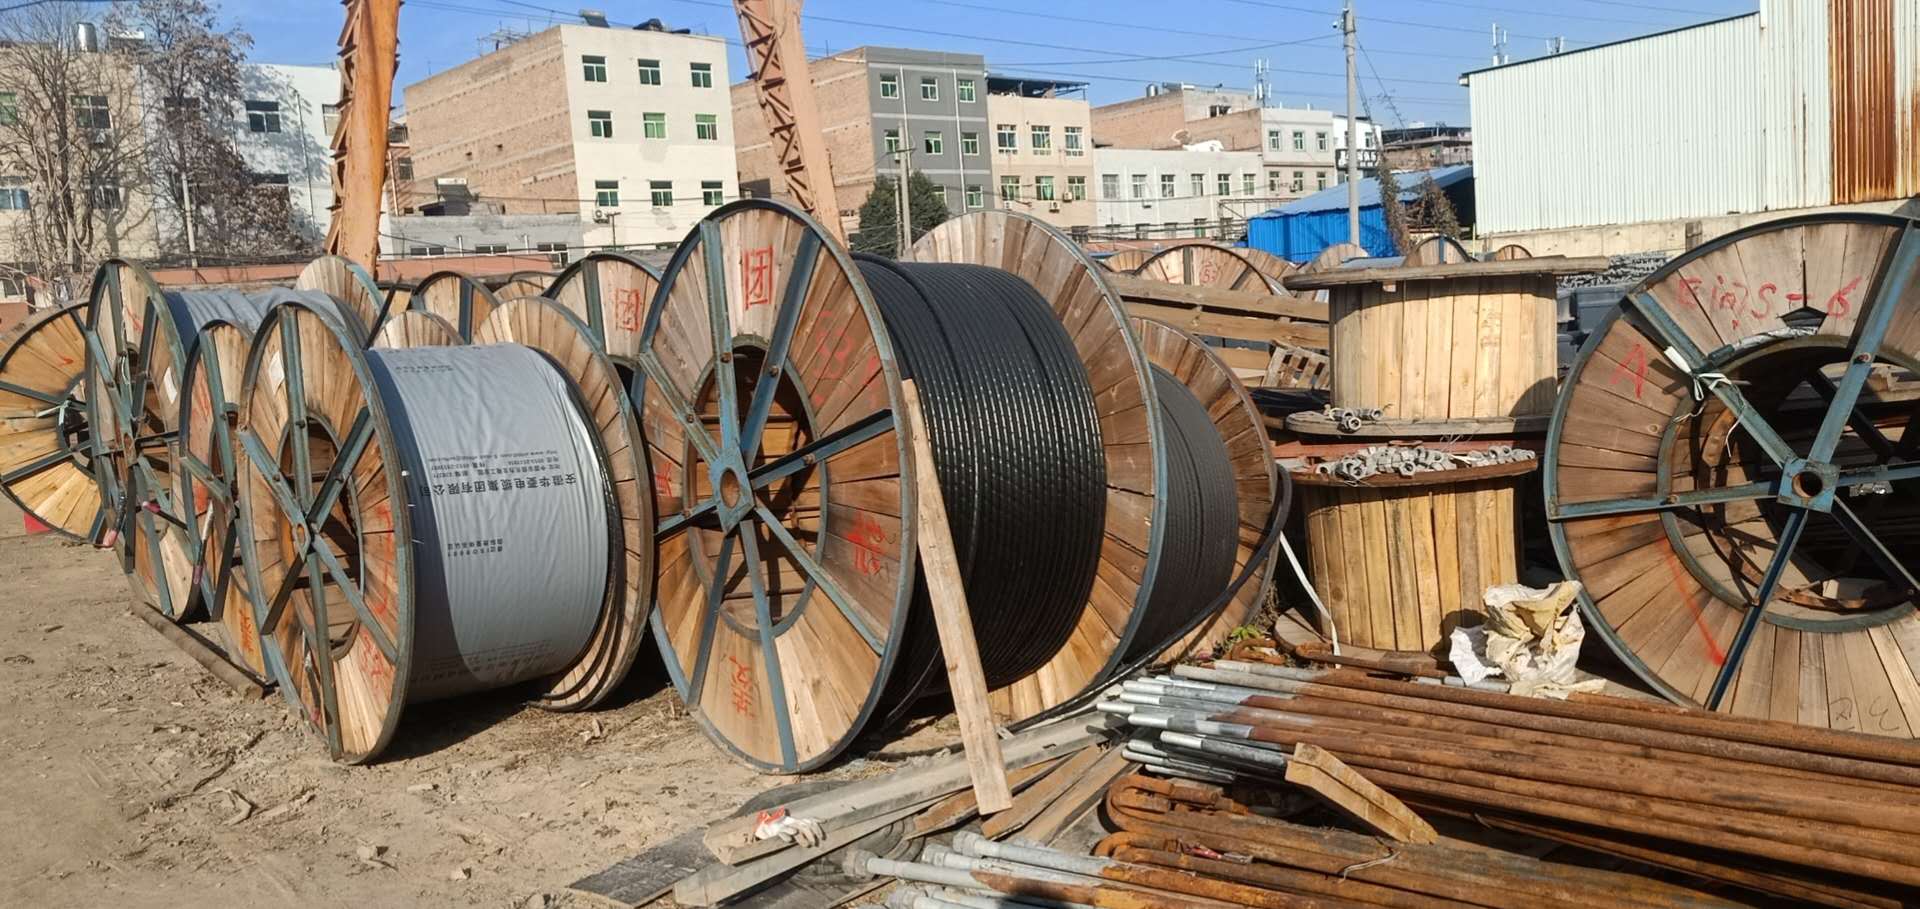 黑龙江地区高价回收报废电缆、黑龙江电缆回收